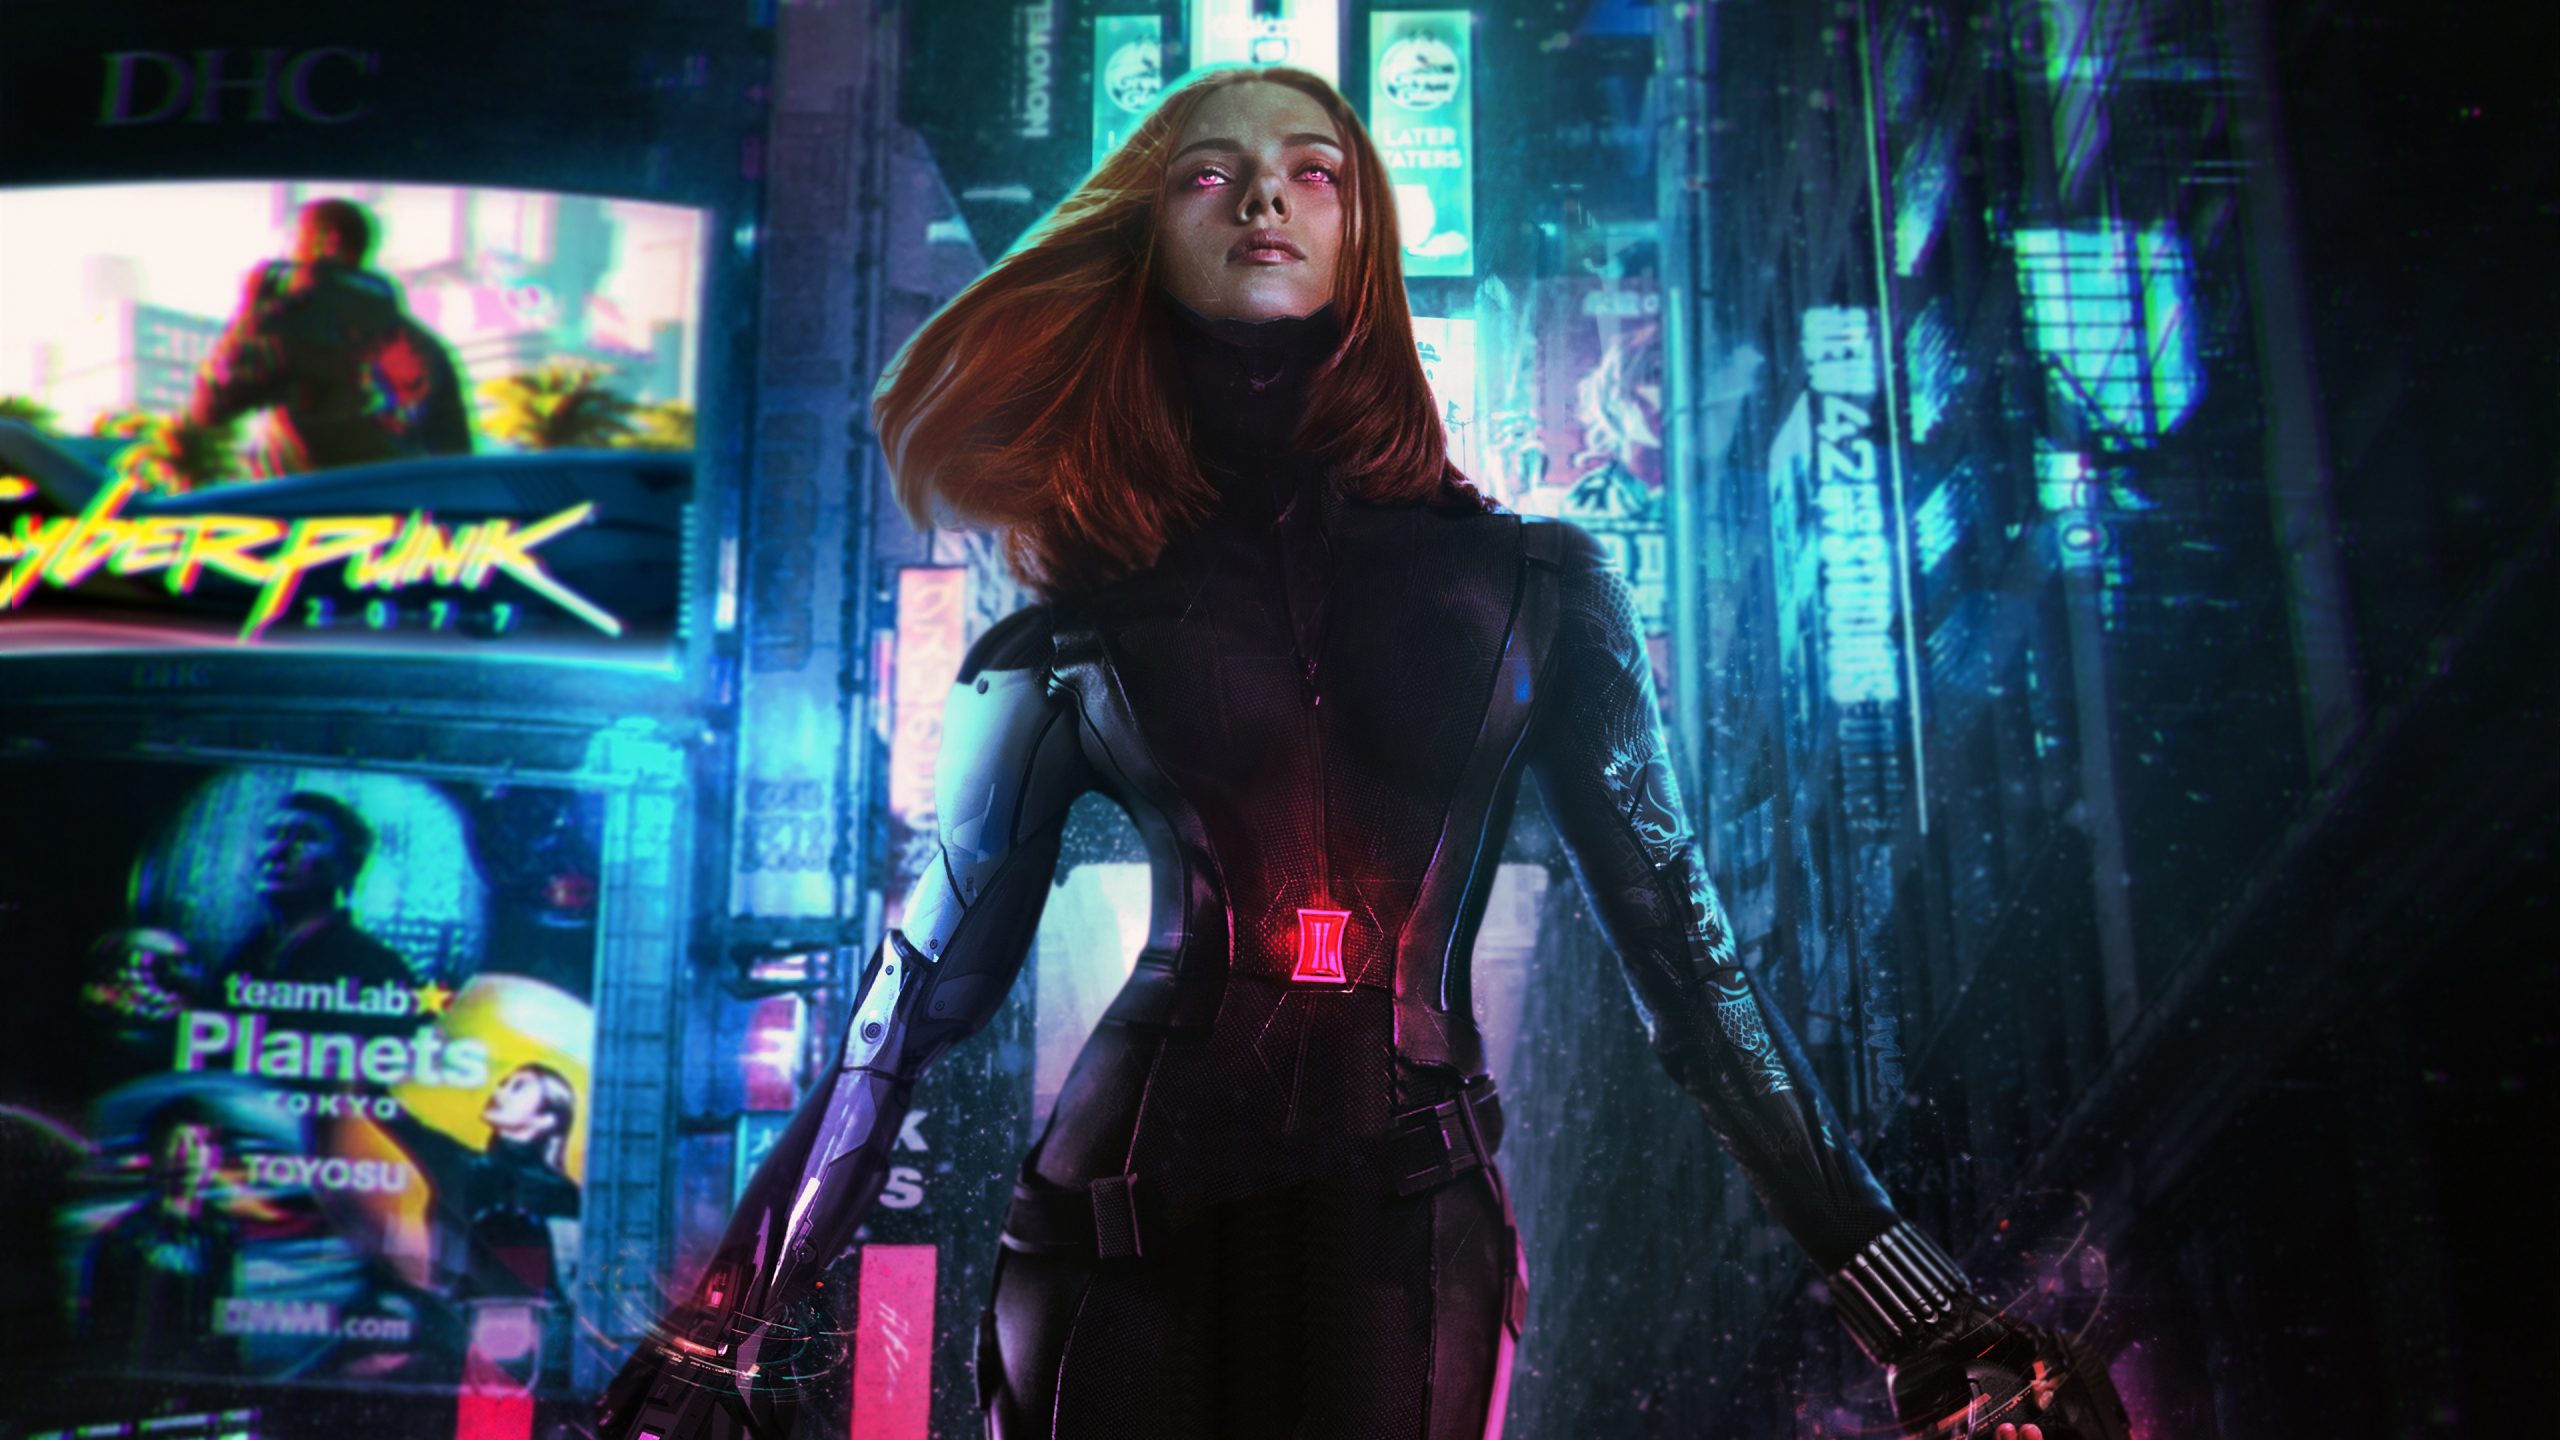 Cyberpunk 2077 Black Widow, Hd Games, 4K Wallpapers à Deviantart Wallpapers 